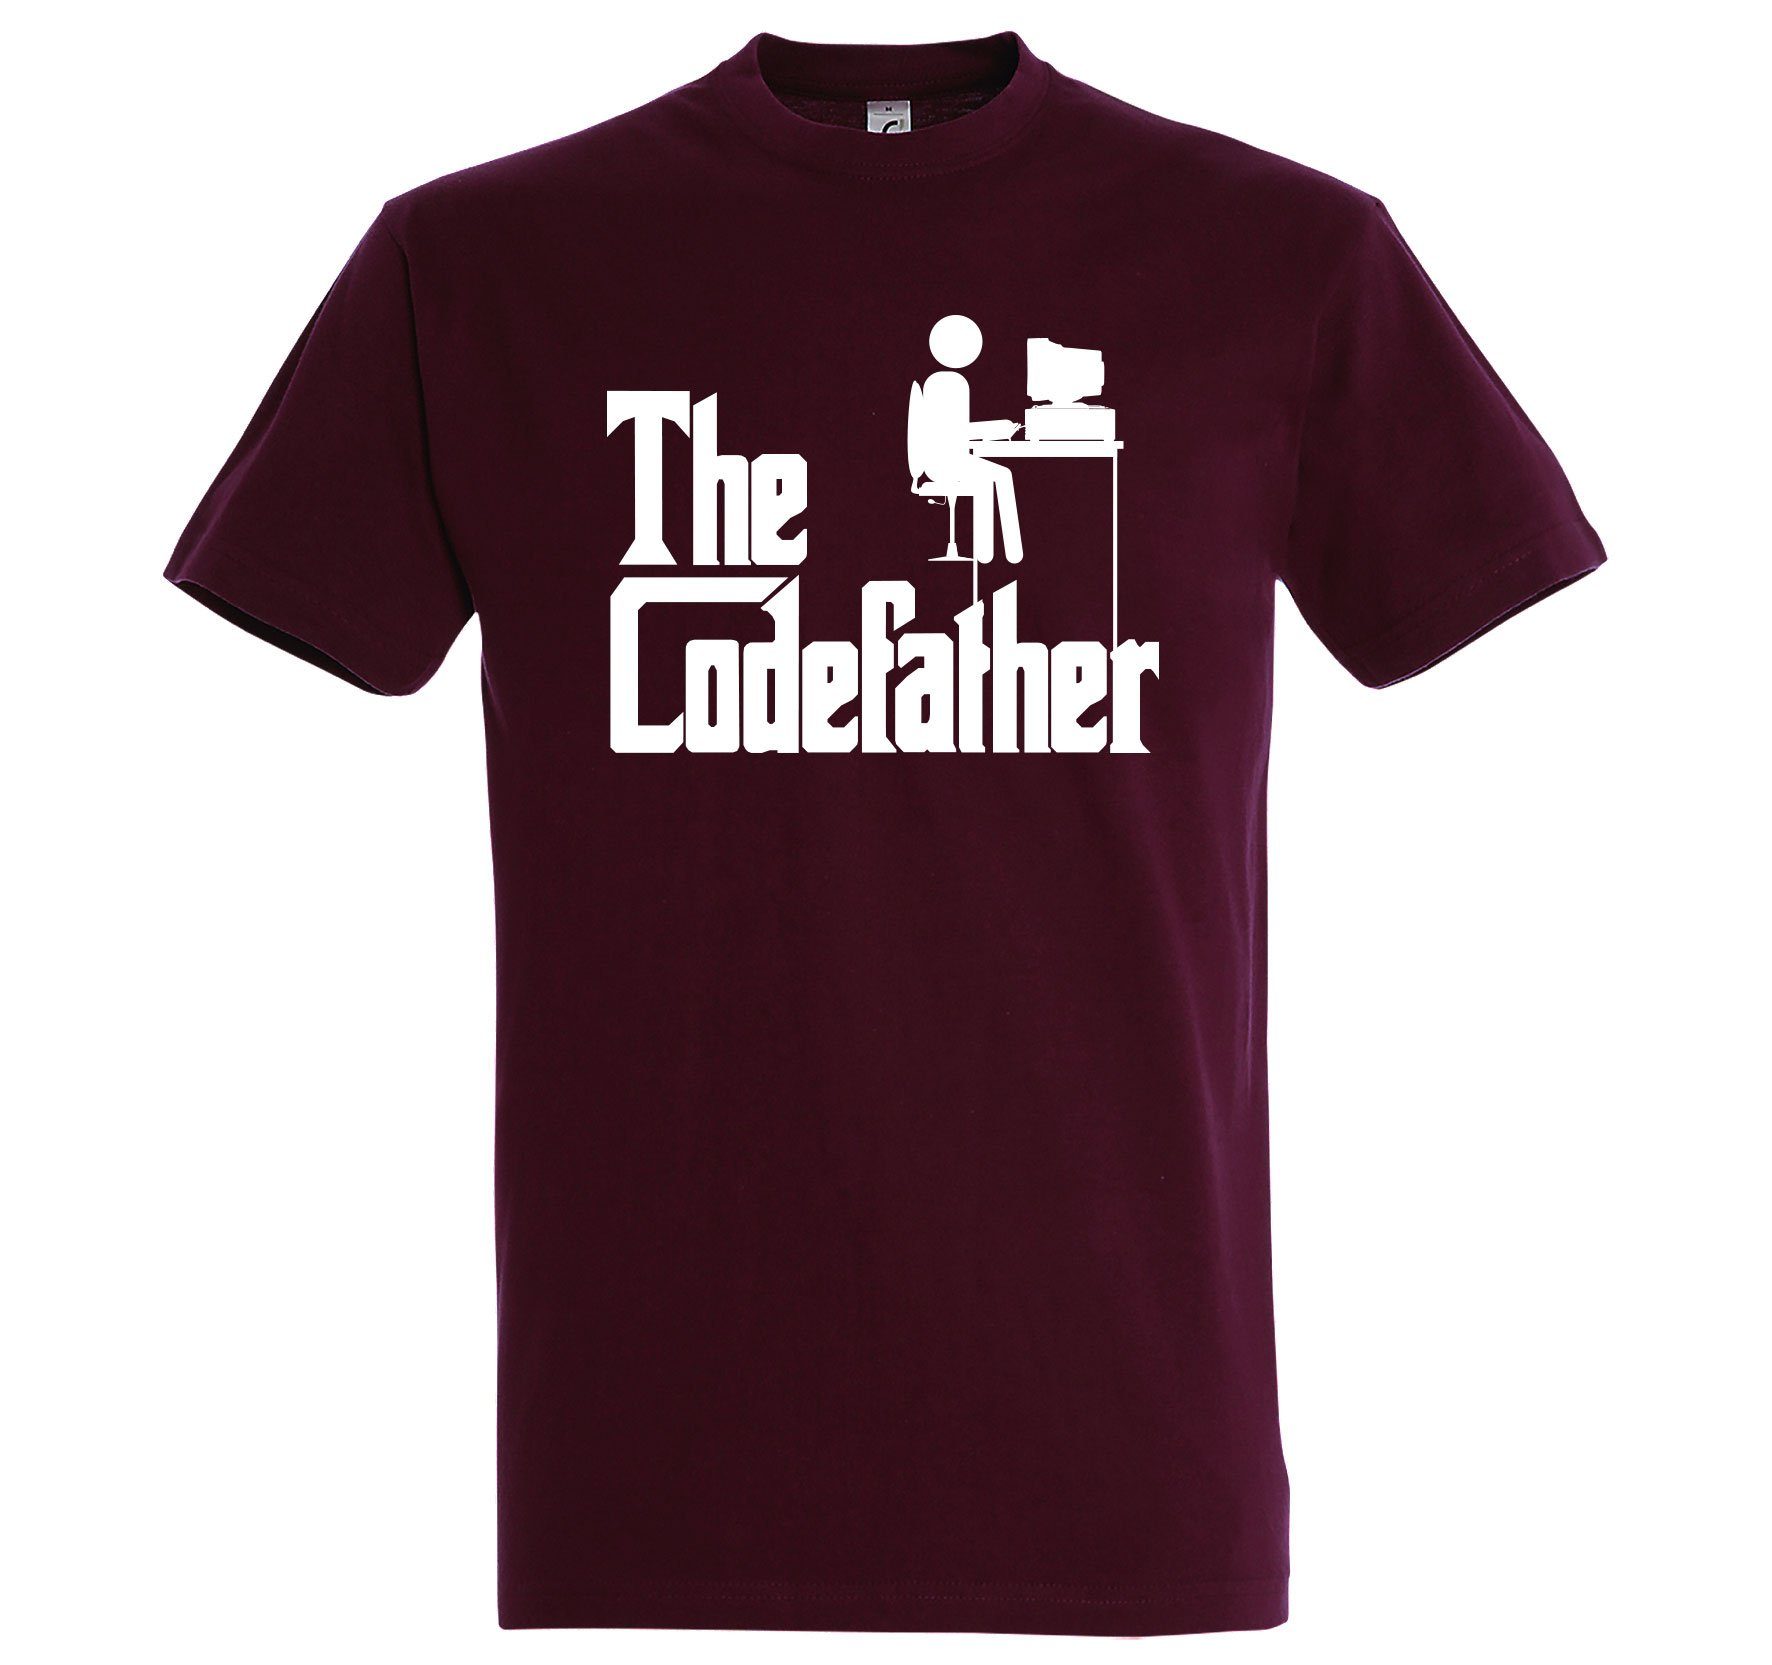 The T-Shirt mit Burgund Codefather Youth Designz lustigem Frontprint Herren T-Shirt